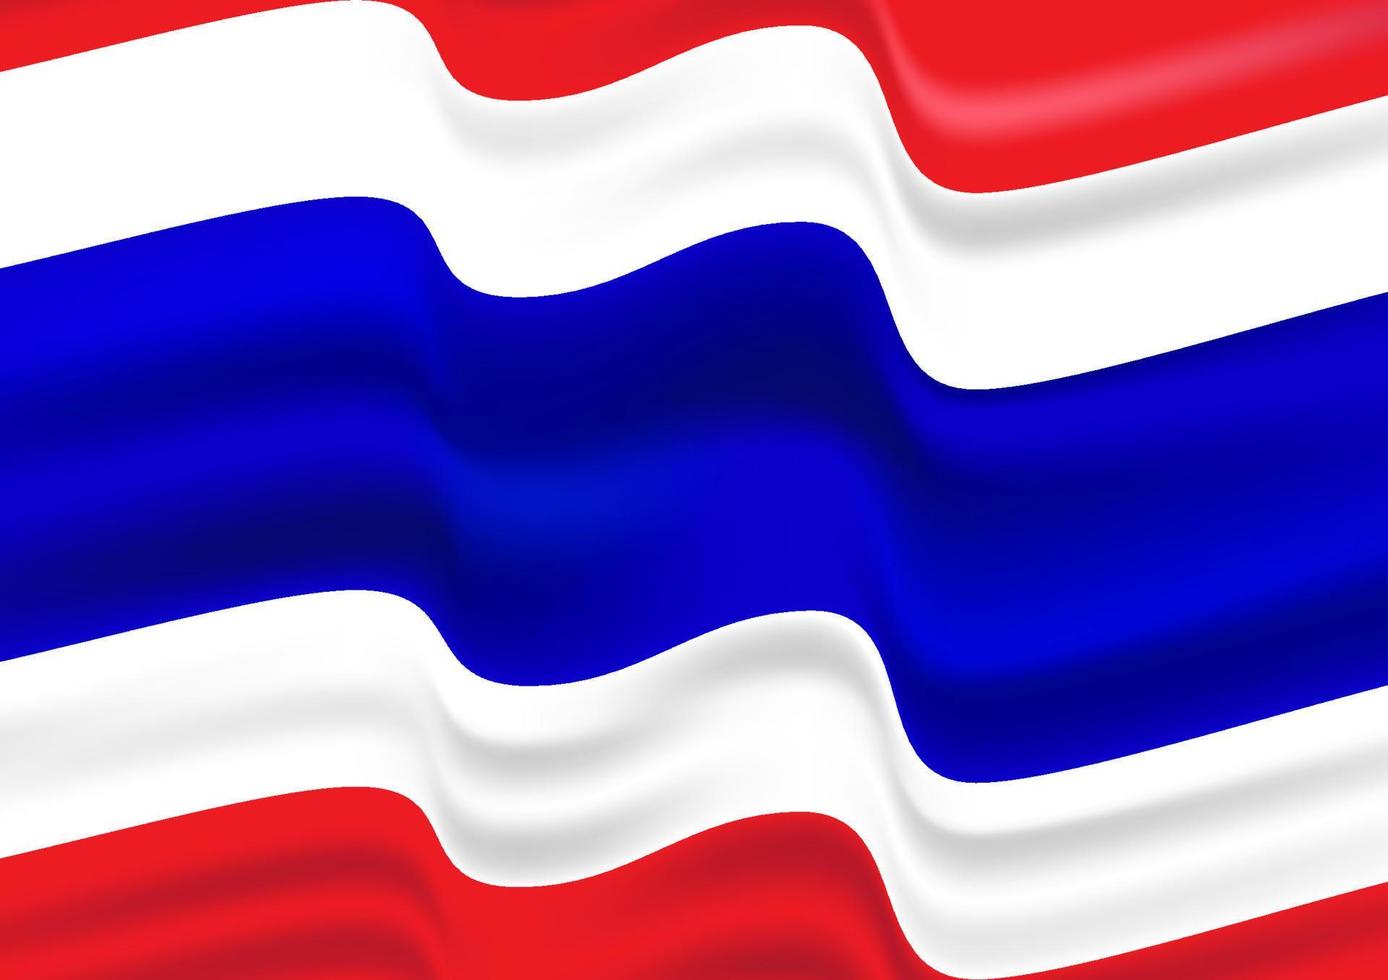 expedición Anfibio Descenso repentino bandera de imagen gráfica de tailandia con 3 colores rojo, blanco, azul  para la ilustración de vector de fondo 8071606 Vector en Vecteezy